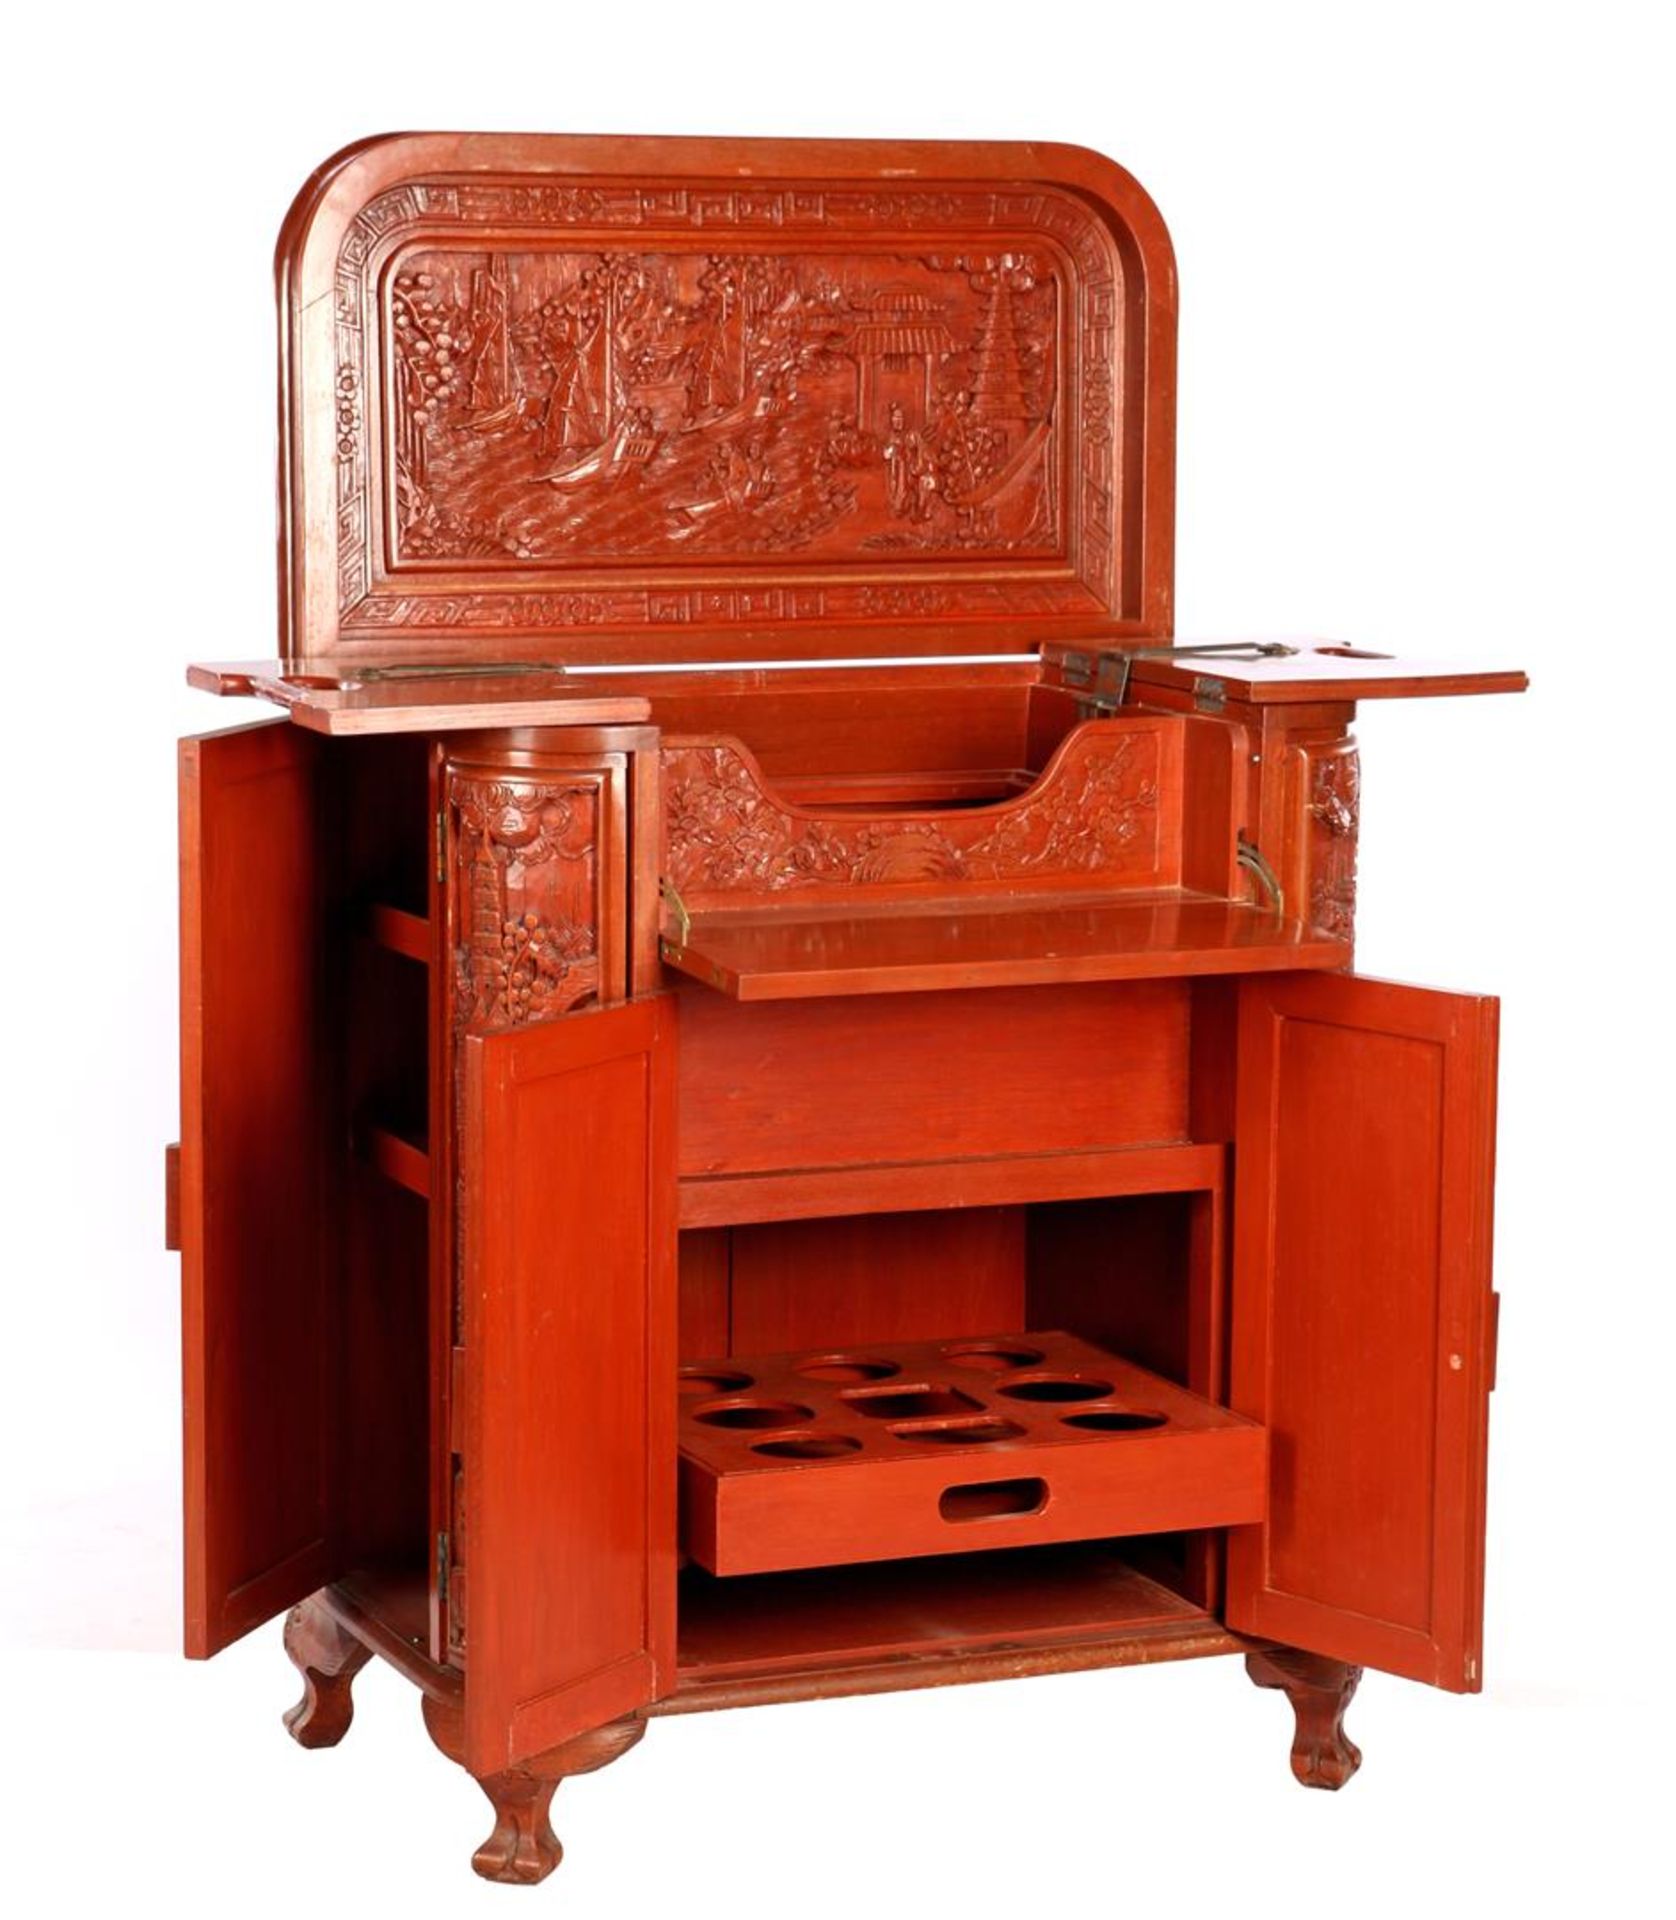 Oriental bar furniture - Image 6 of 6